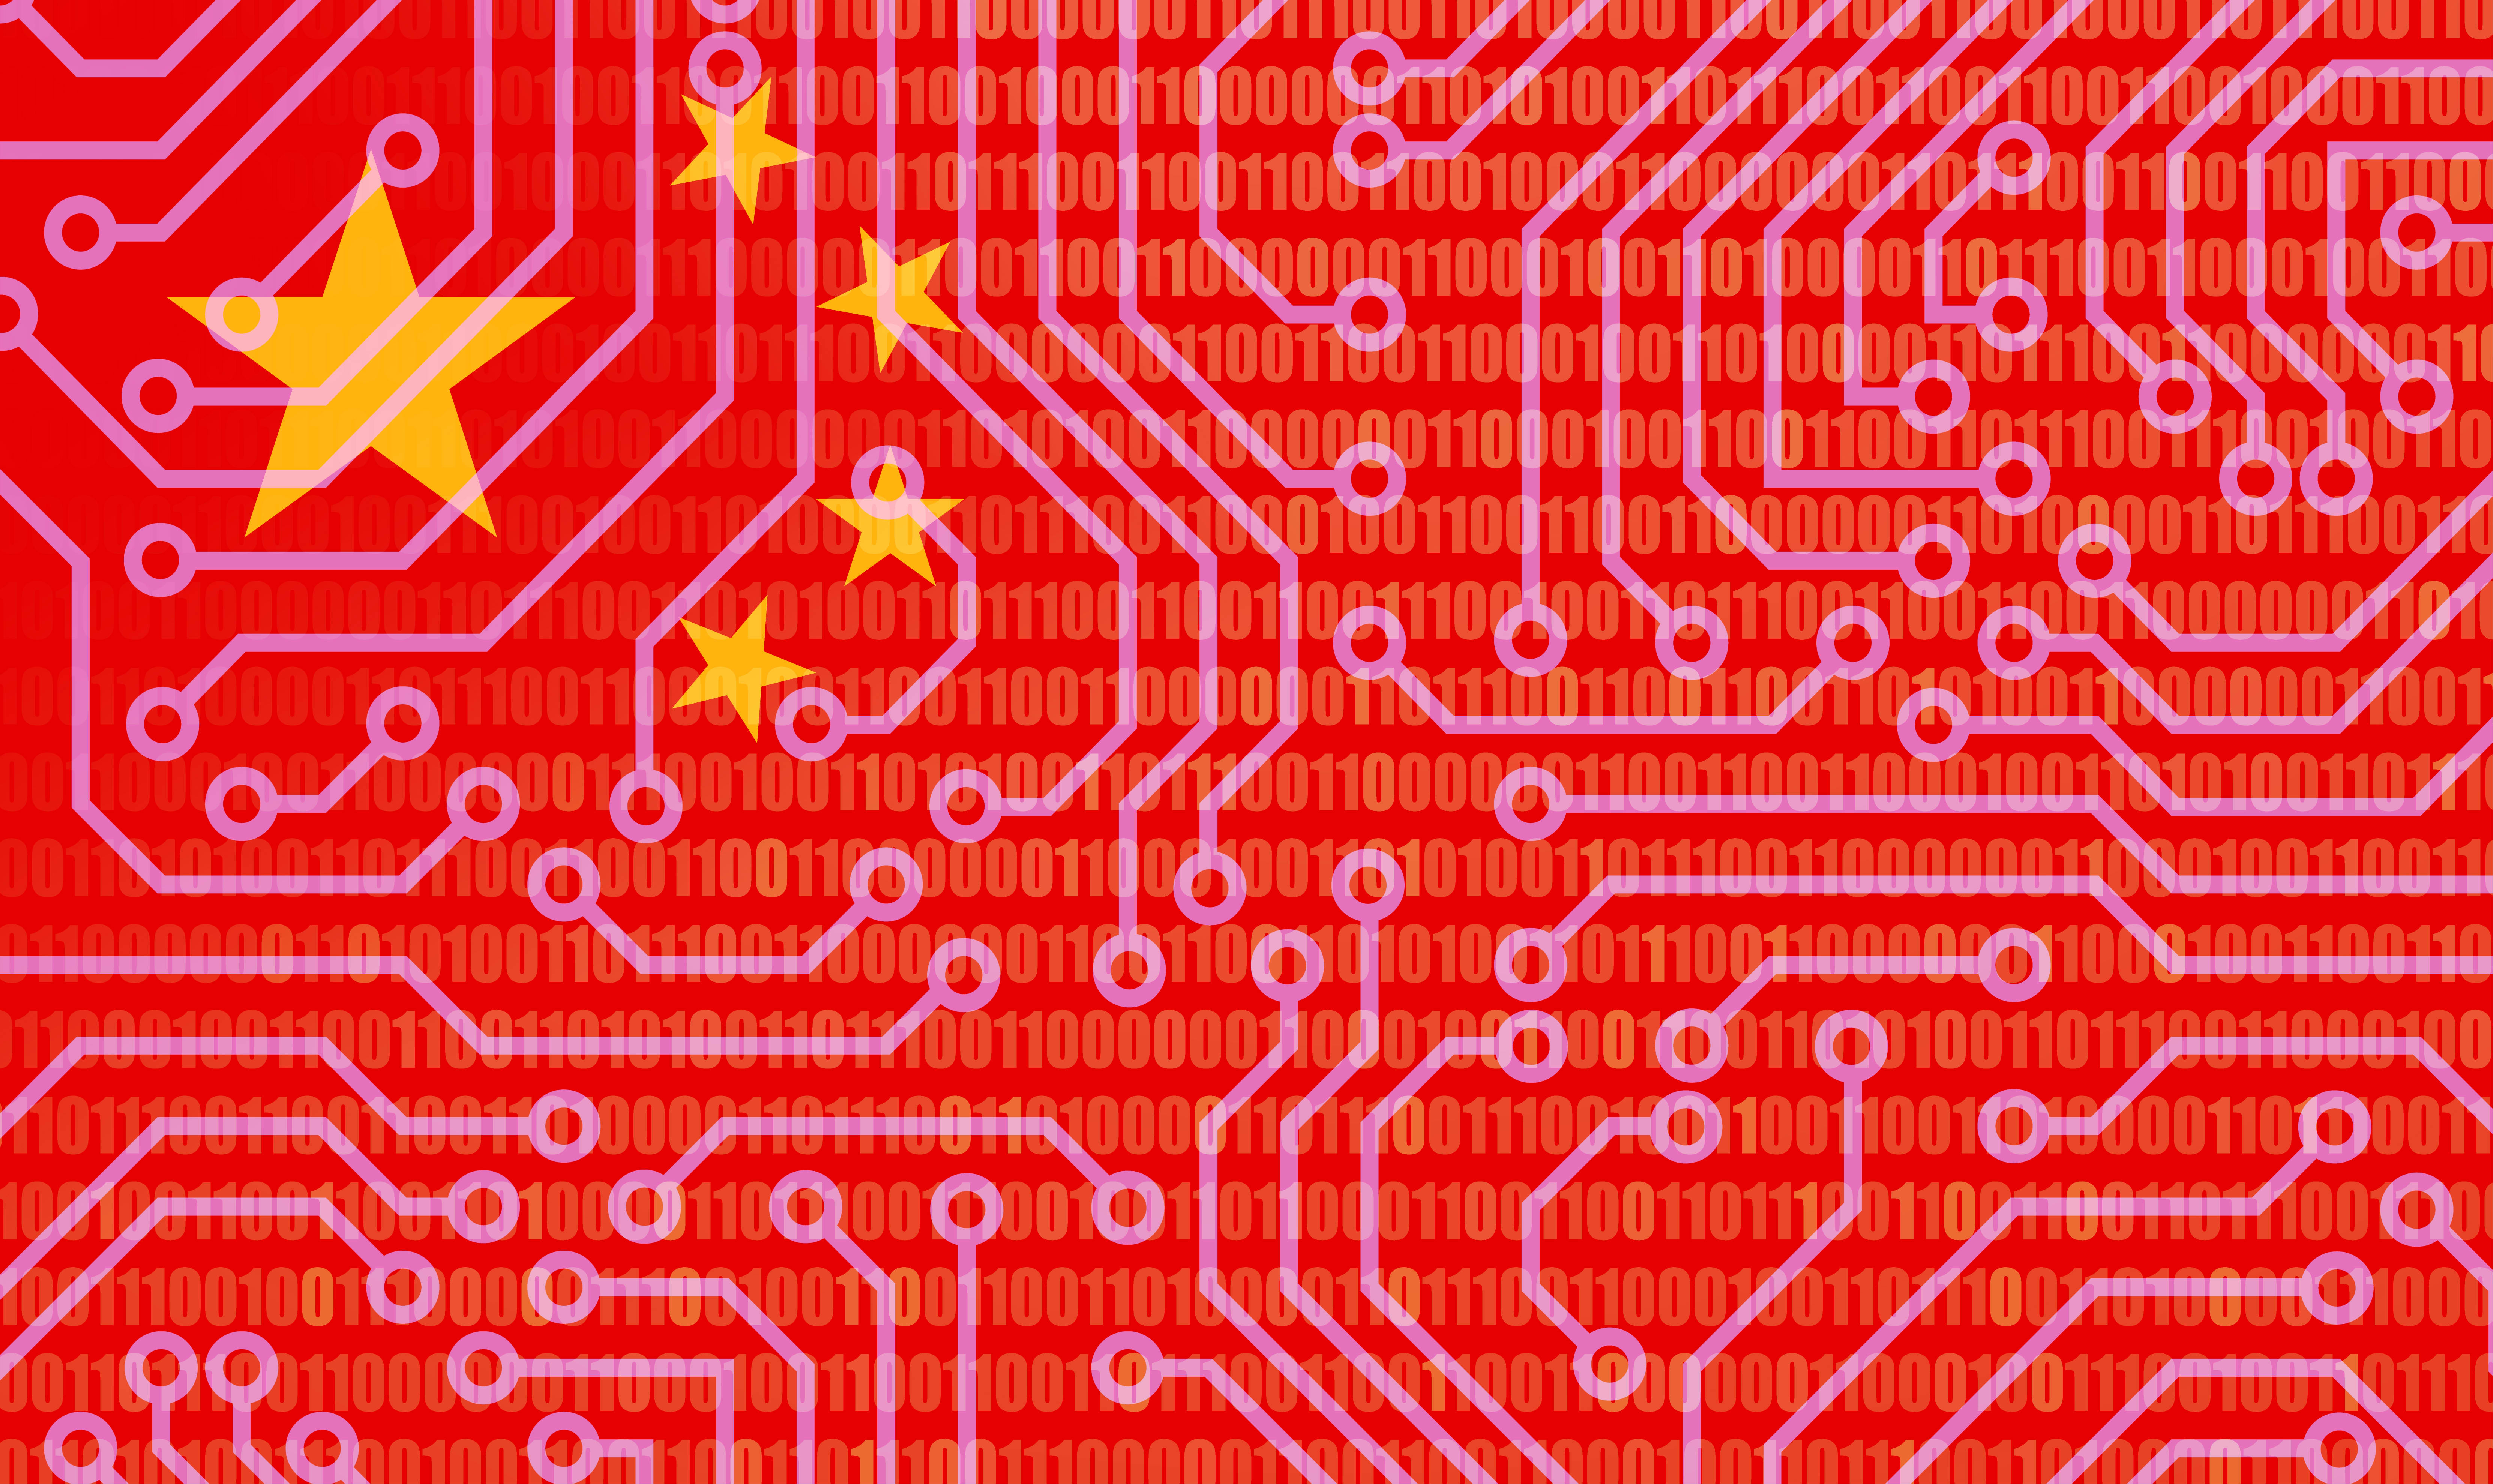 Китайські техногіганти Alibaba і Tencent інвестували в стартап Zhipu - конкурента OpenAI